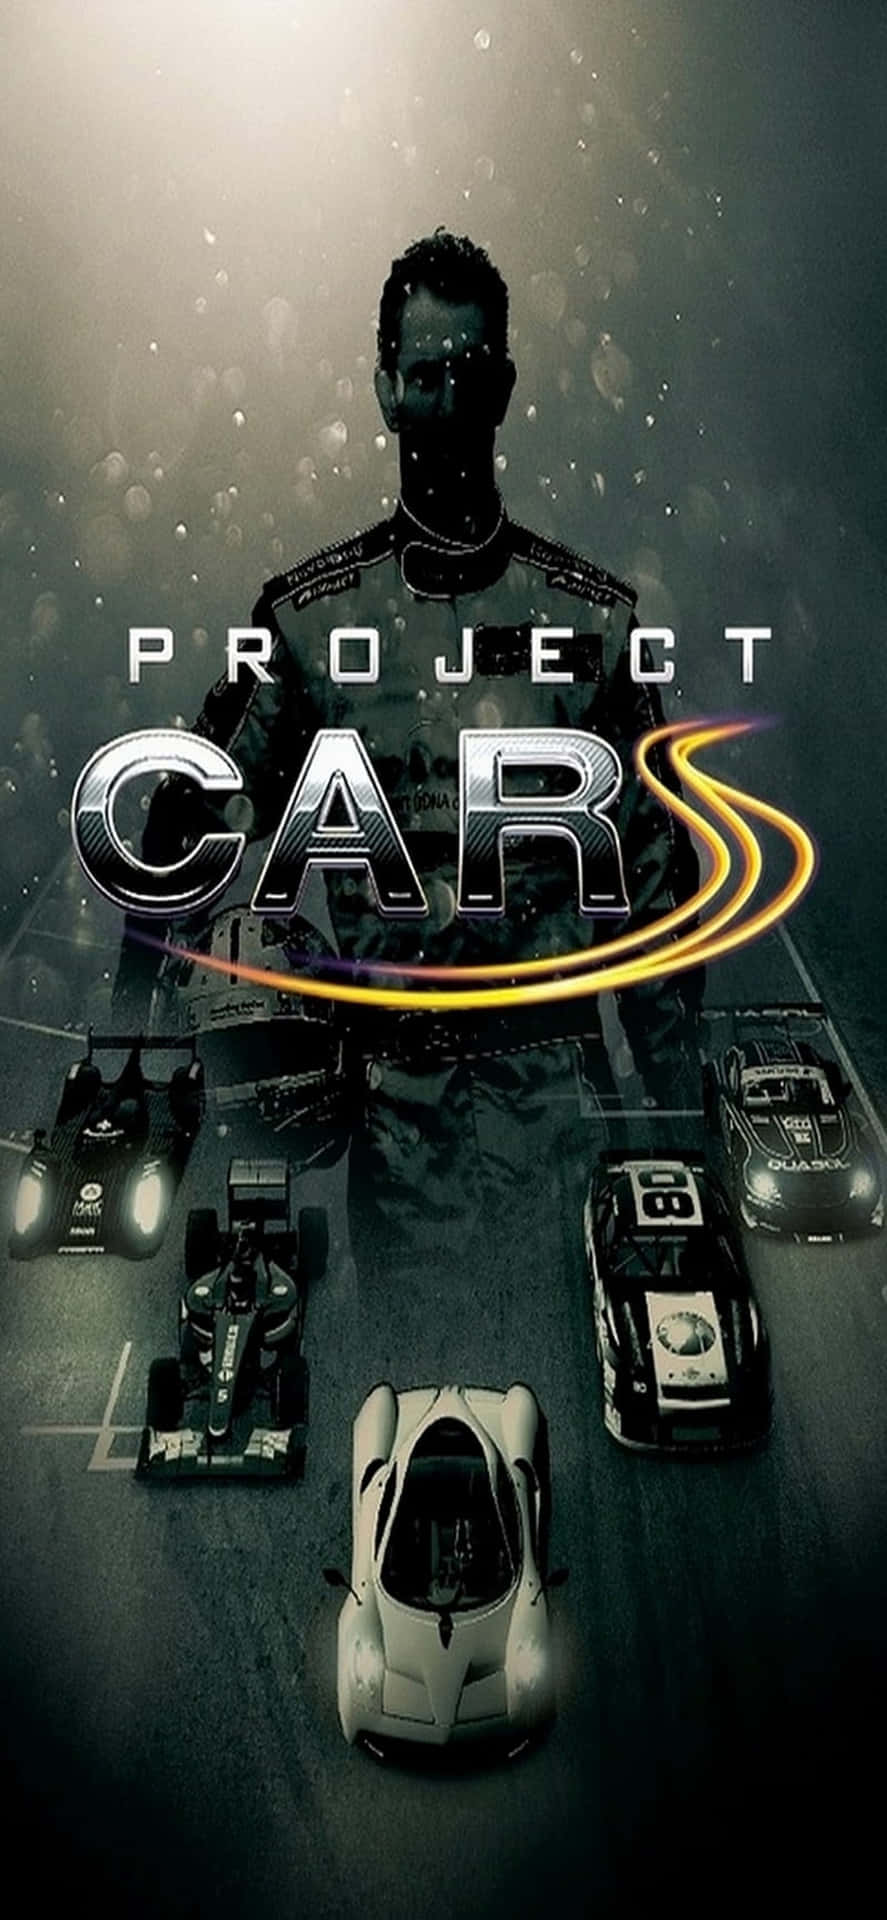 Iphonex Bakgrund Med Project Cars-spel, Titelposter Och Diverse Bilar.